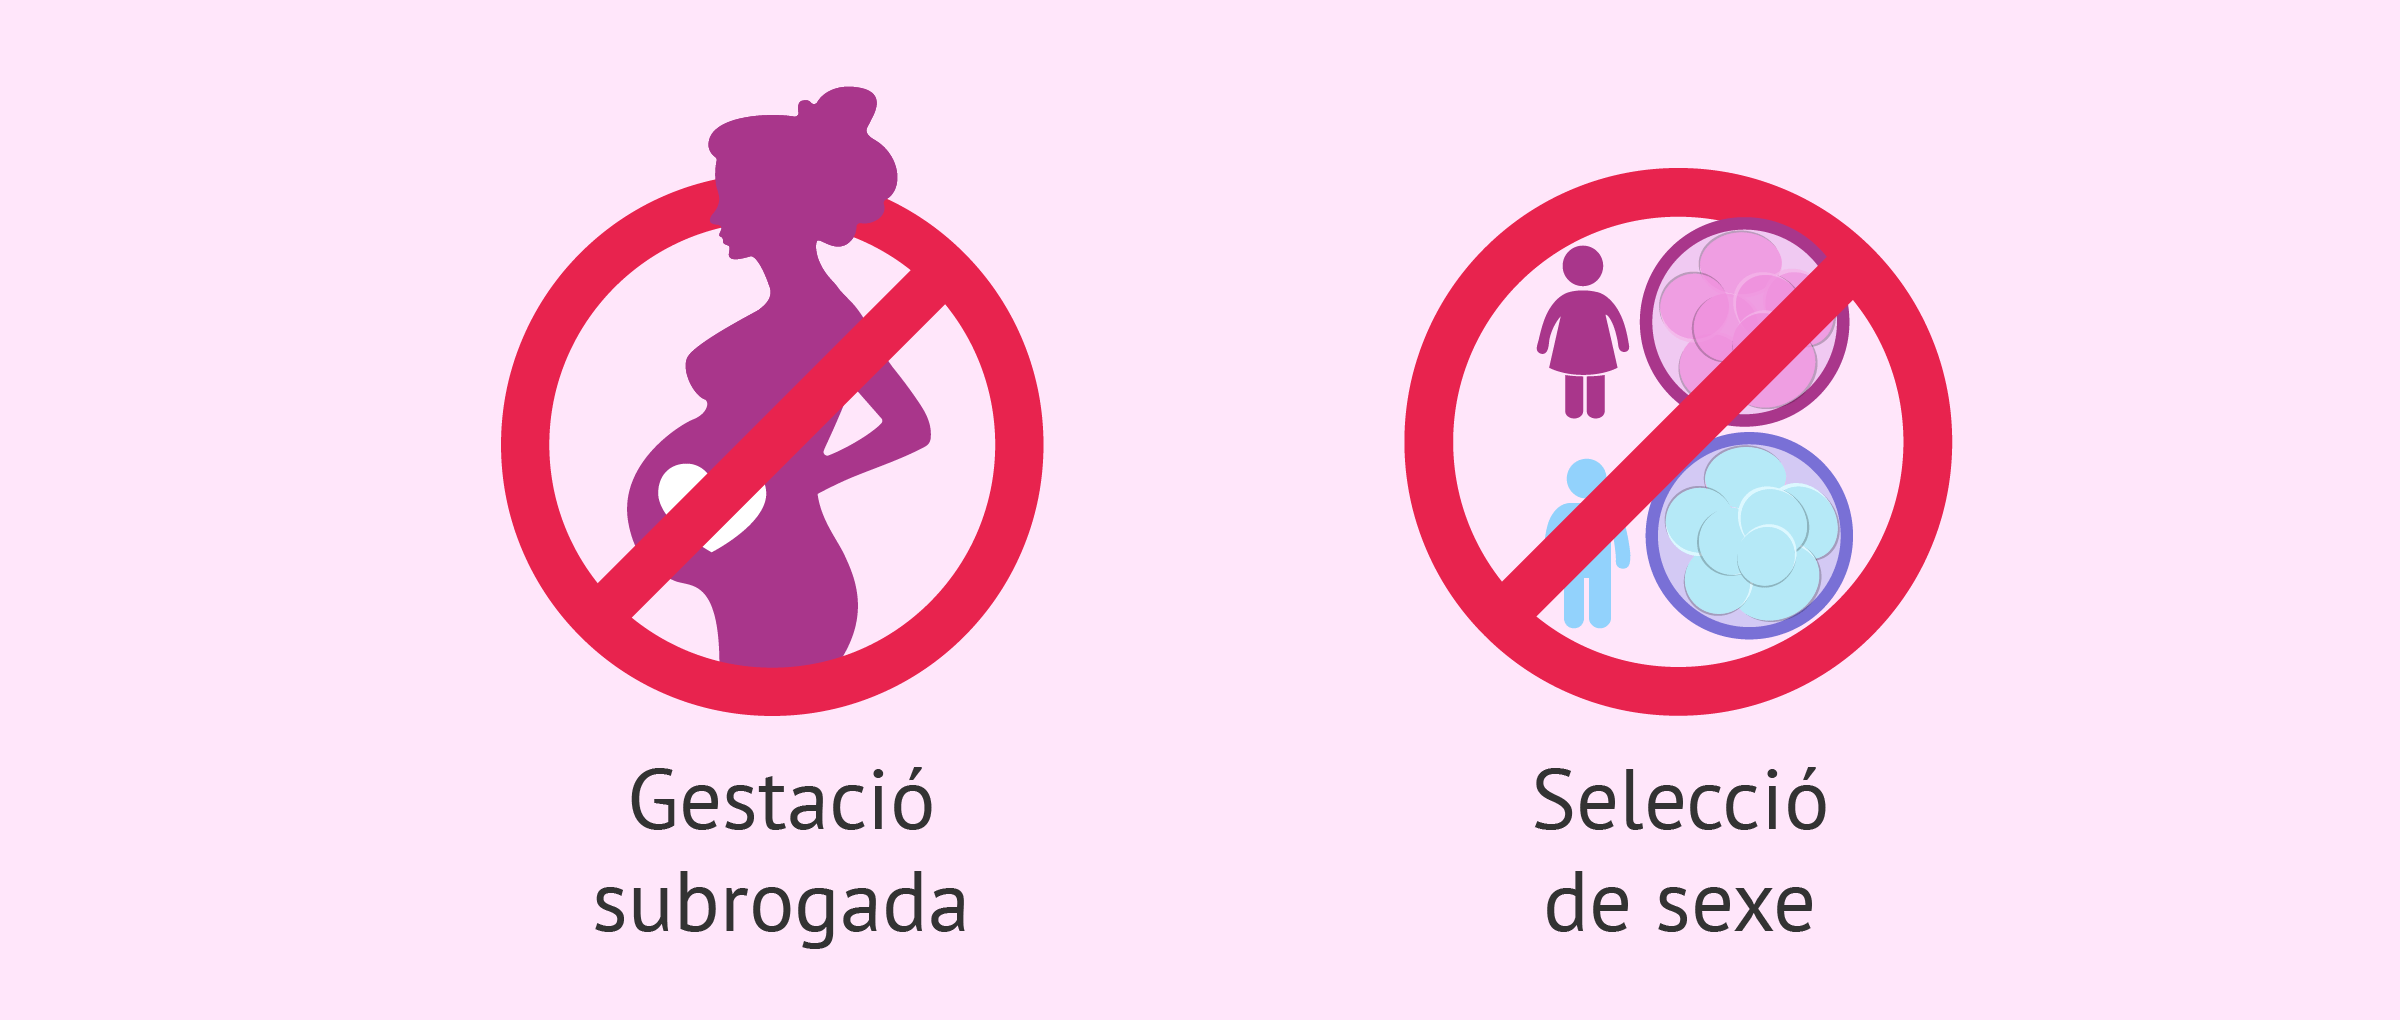 Tècniques de reproducció assistida prohibides a Espanya